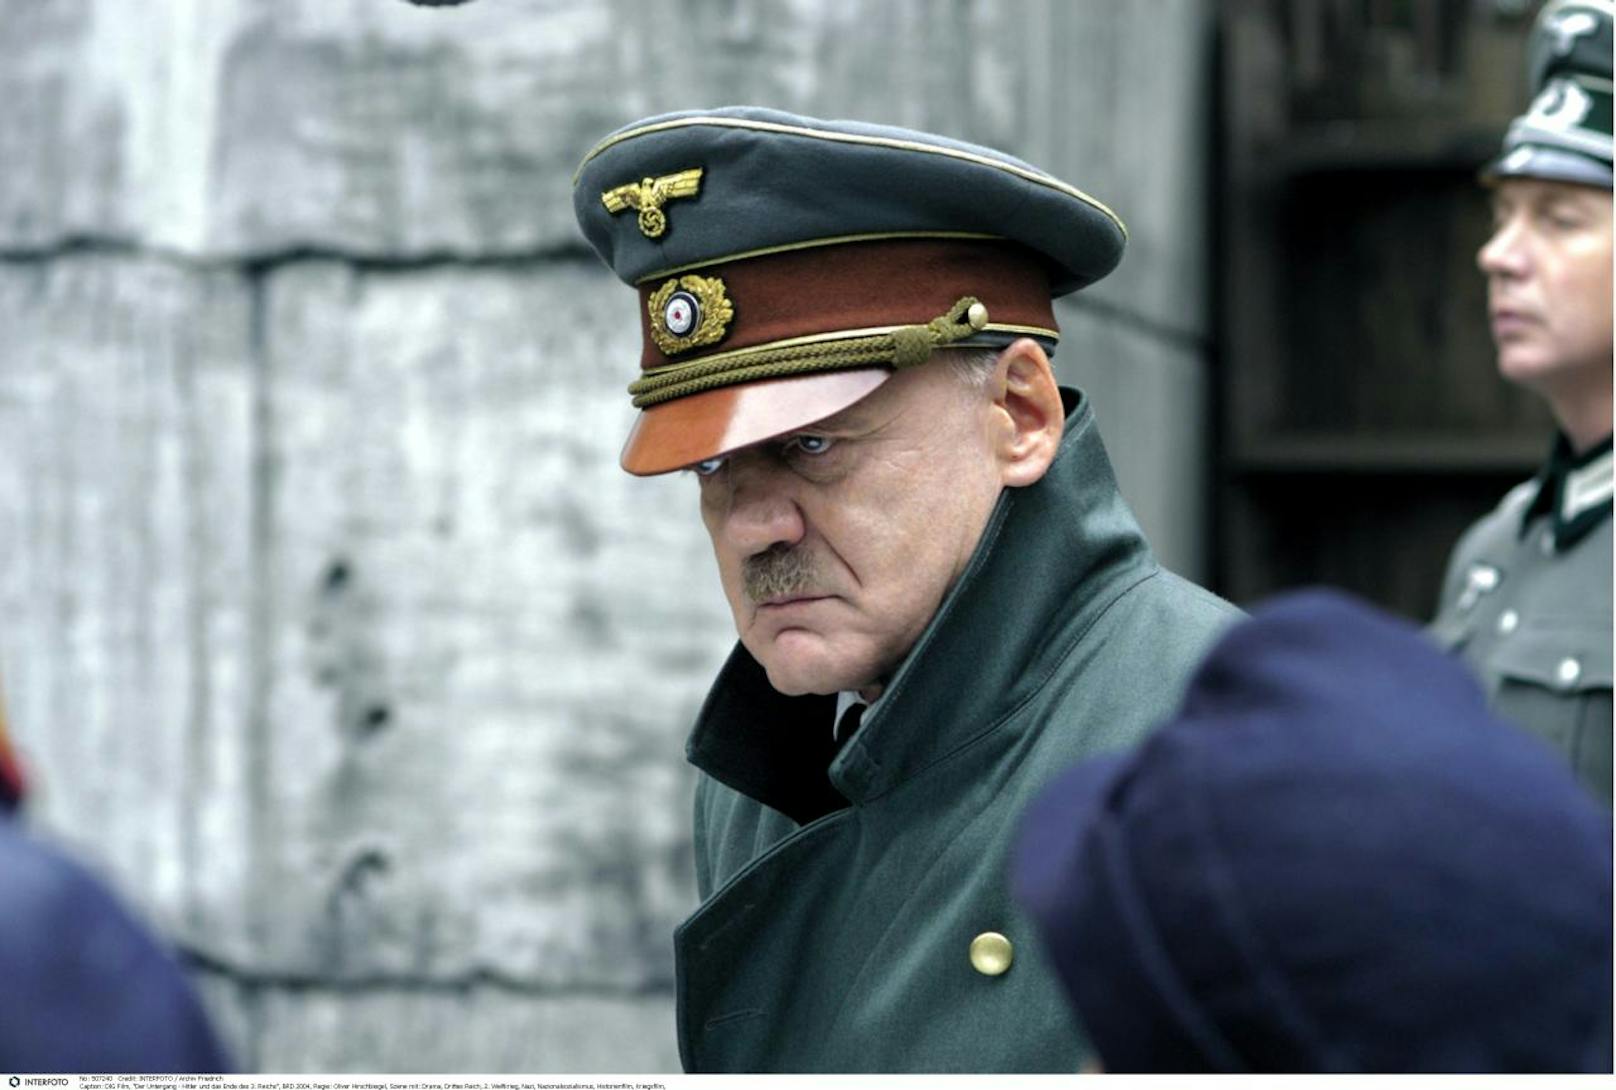 Bruno Ganz als Adolf Hitler in "Der Untergang"